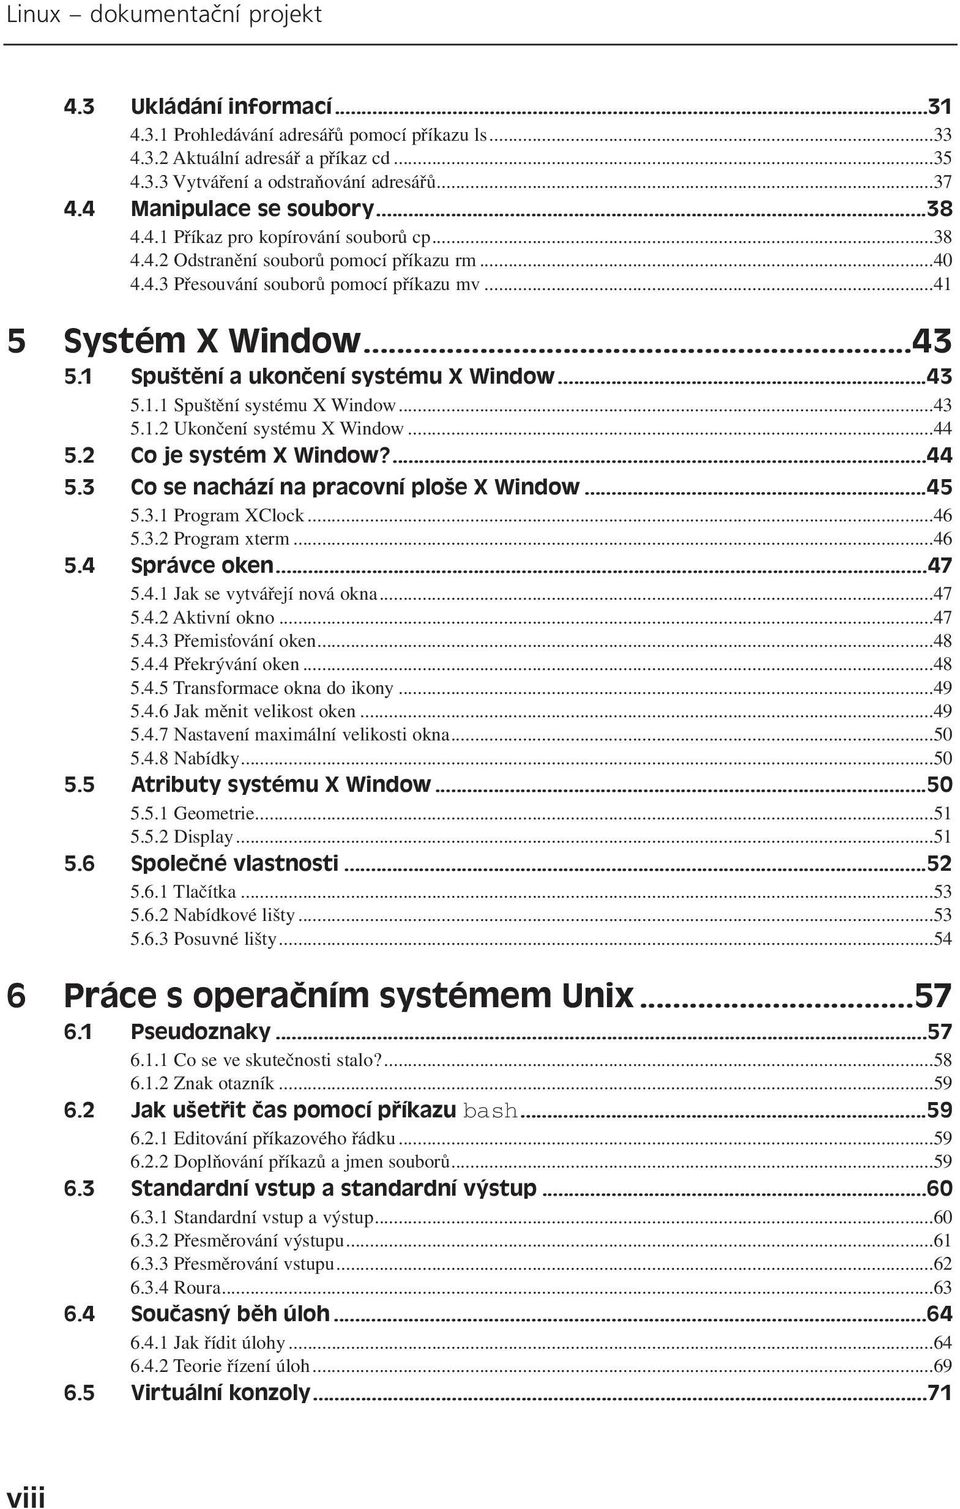 1 Spuštění a ukončení systému X Window...43 5.1.1 Spuštění systému X Window...43 5.1.2 Ukončení systému X Window...44 5.2 Co je systém X Window?...44 5.3 Co se nachází na pracovní ploše X Window...45 5.